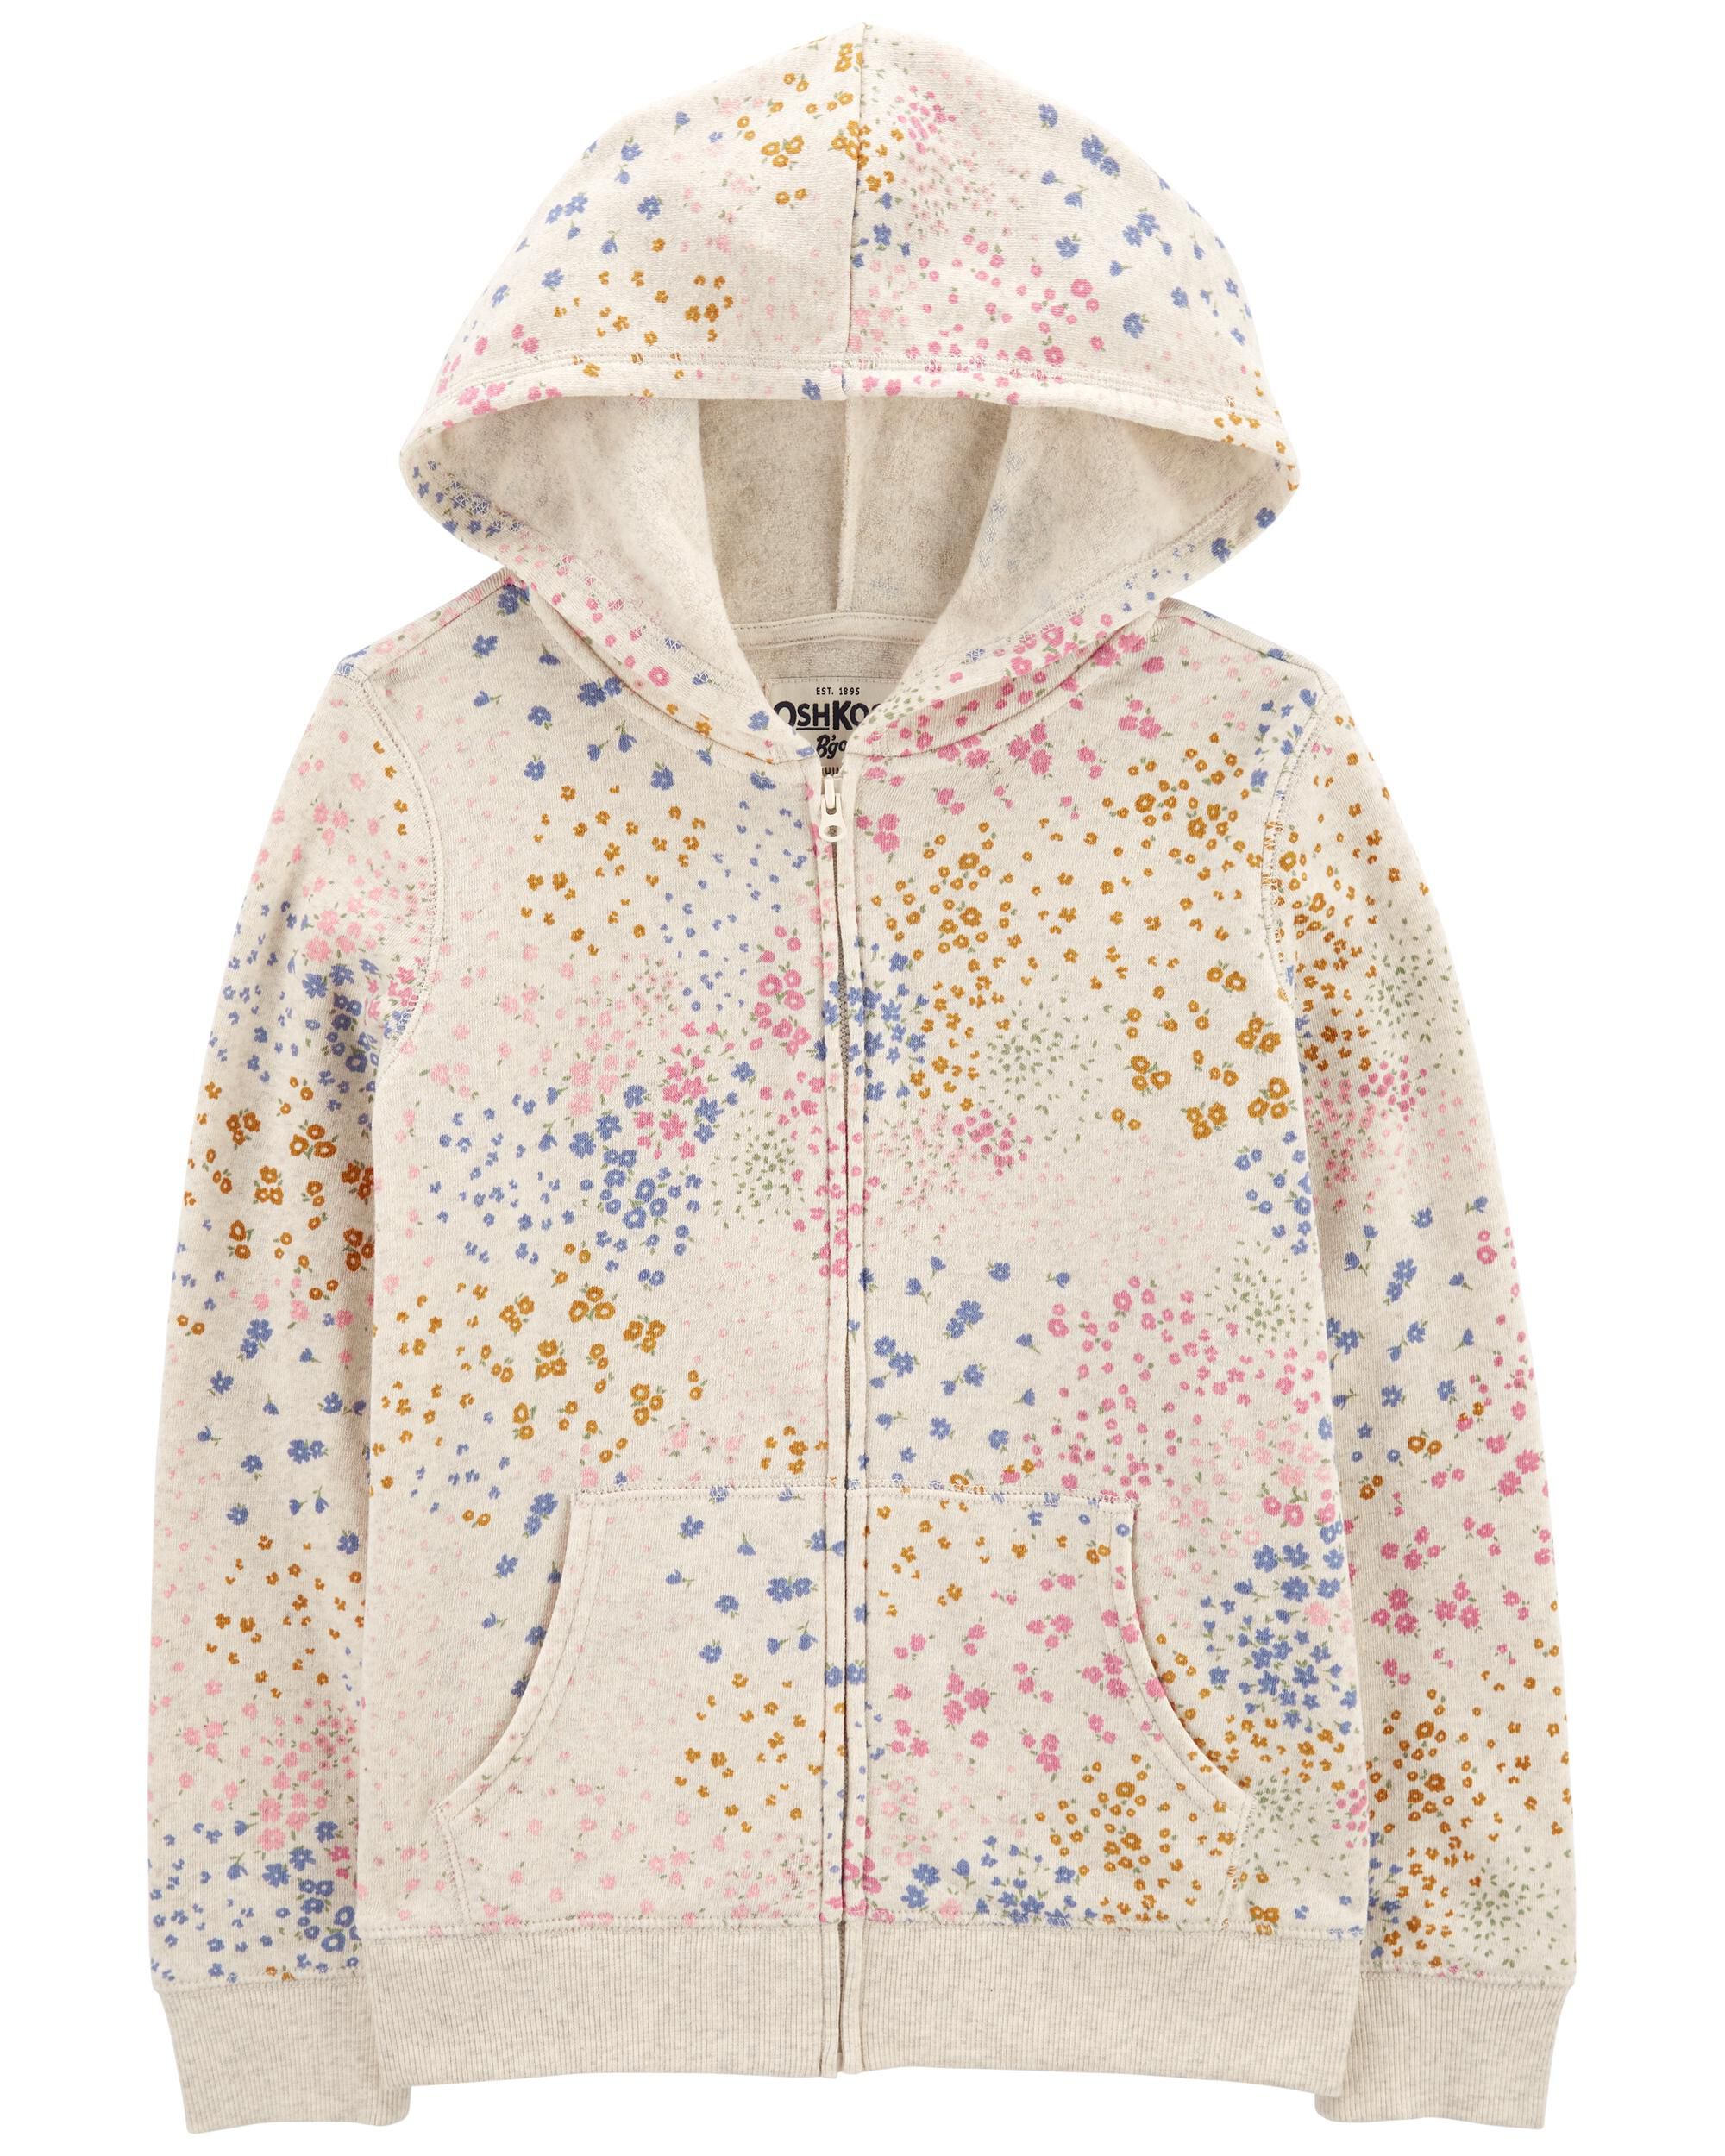 Kleding Meisjeskleding Babykleding voor meisjes Hoodies & Sweatshirts Carter's super soft pink hoodie size 6 months 